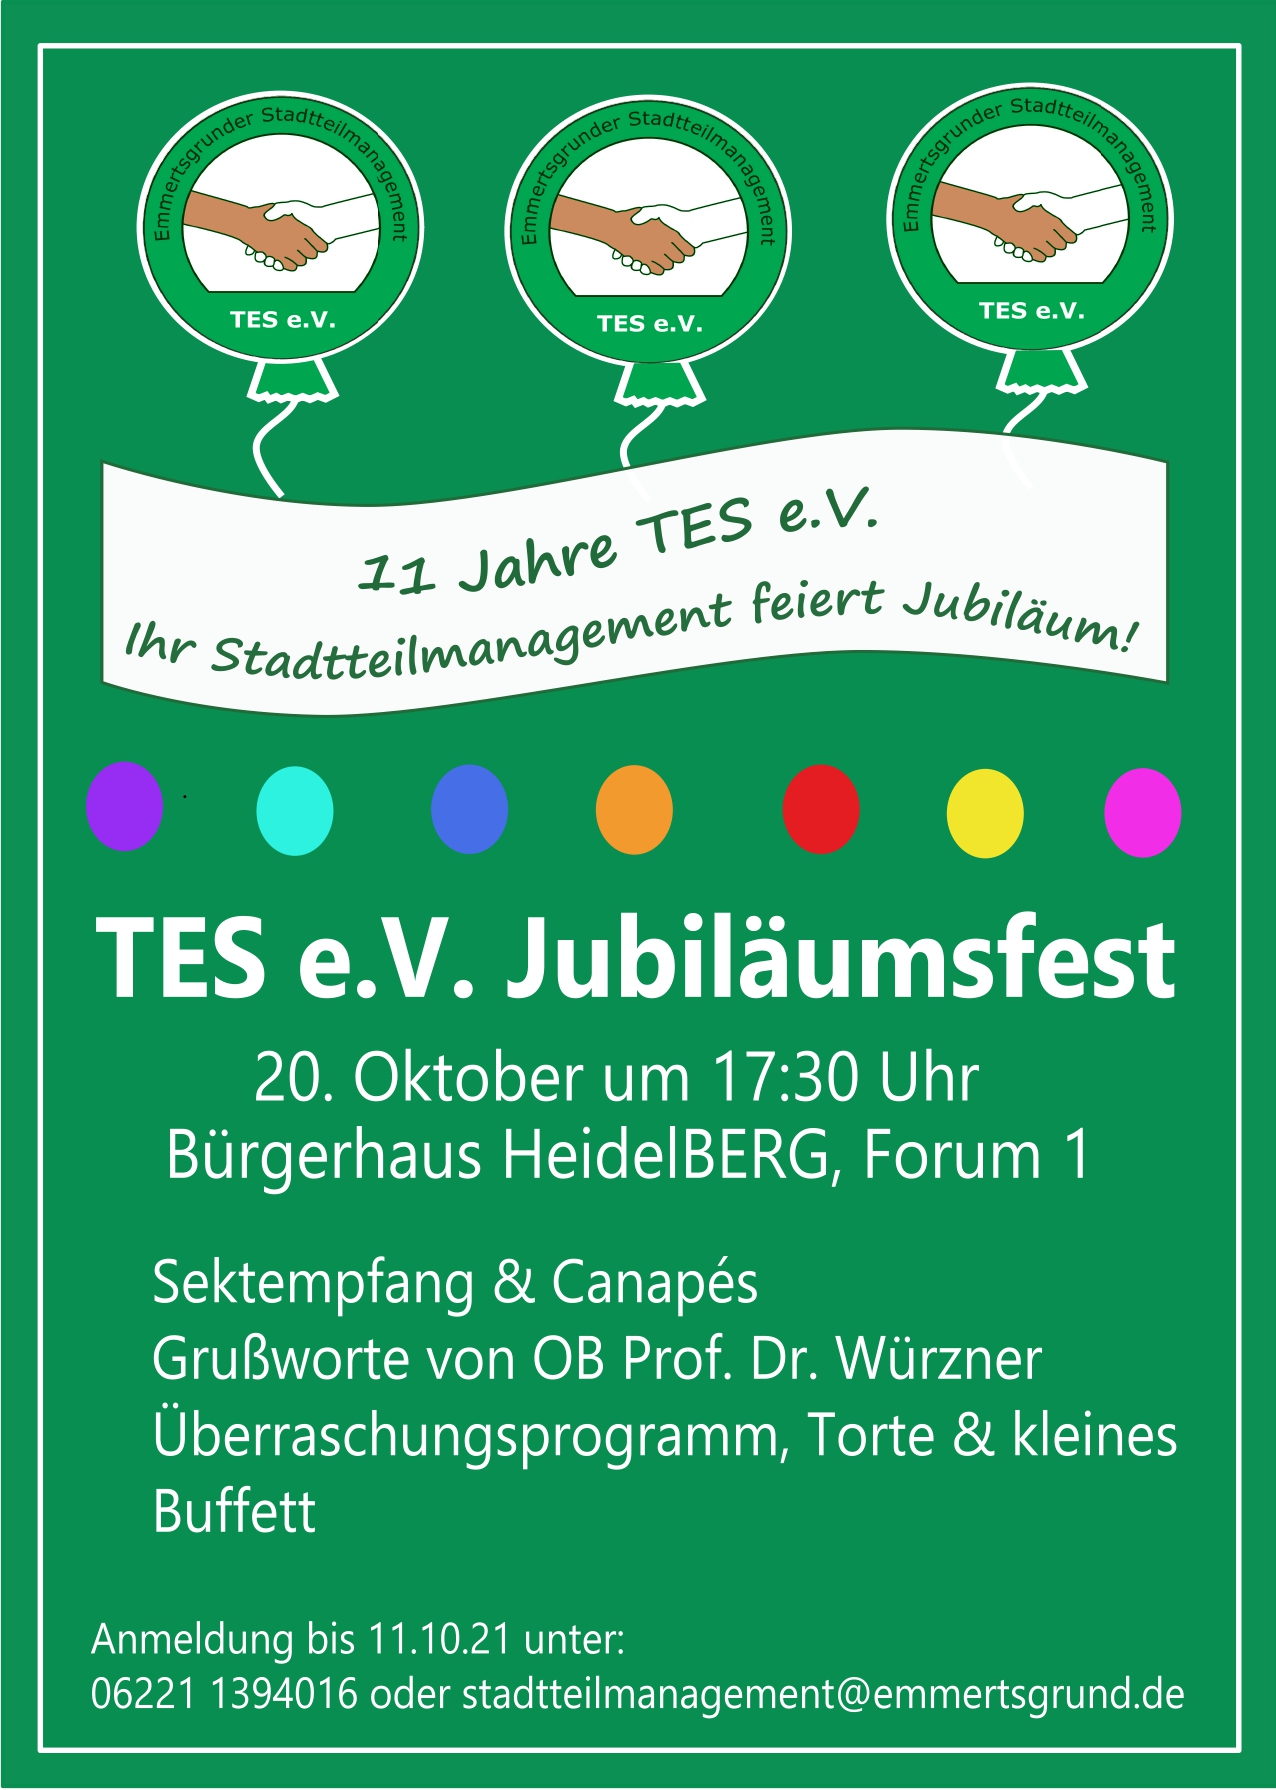 Jubiläumsfest des TES e.V. am 20. Oktober